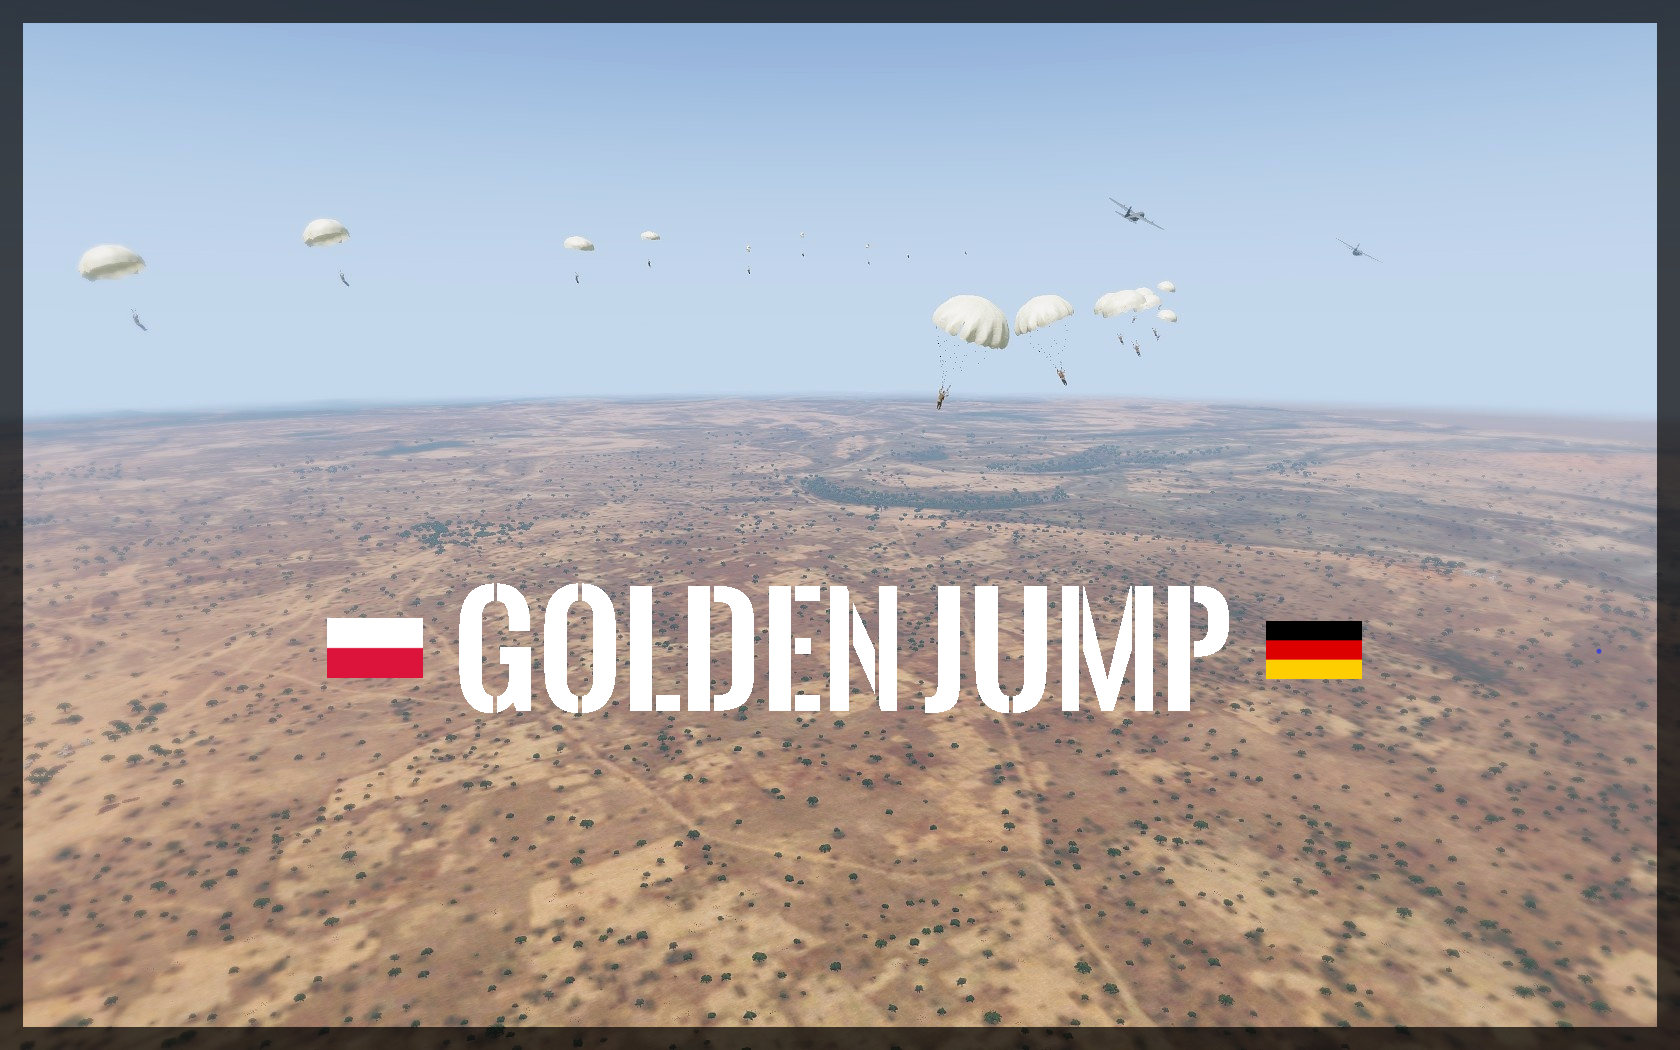 JO 27 "Golden Jump"